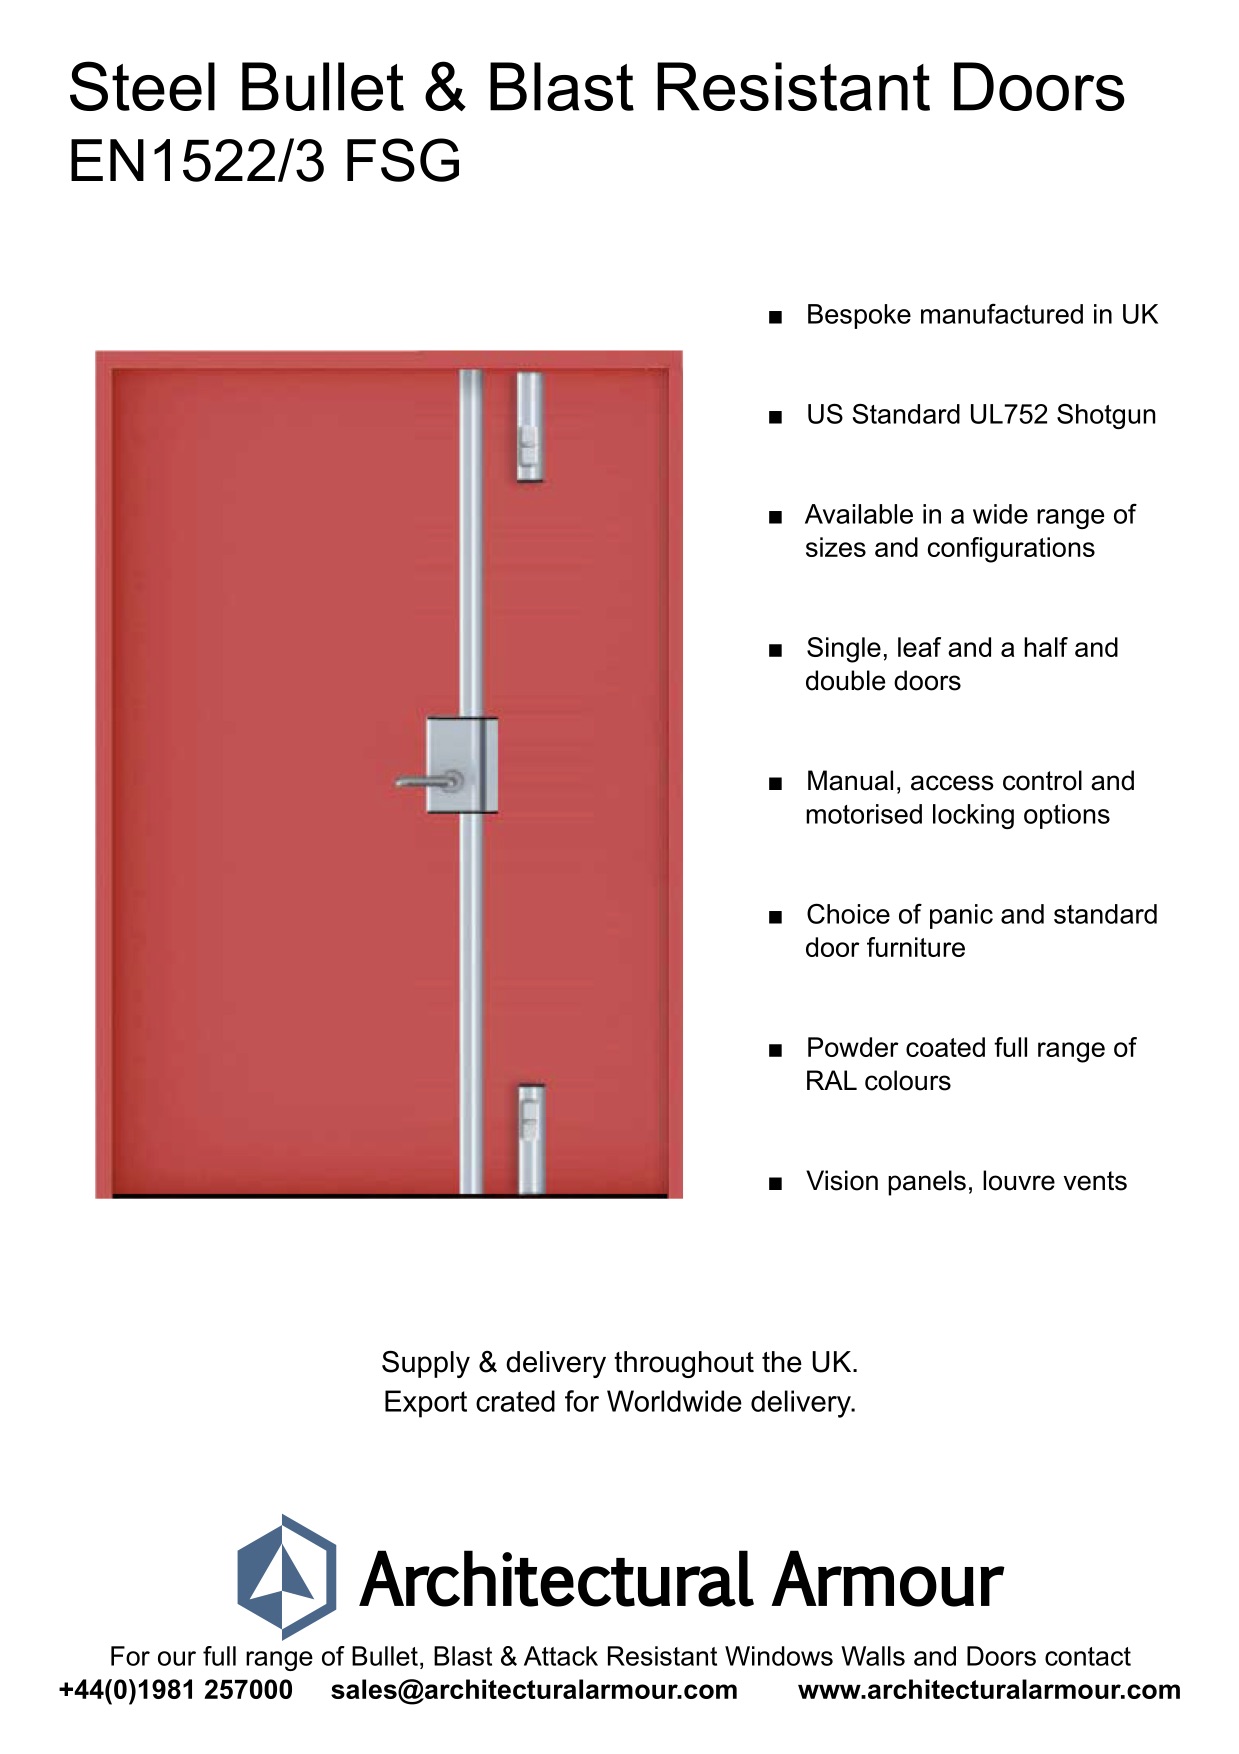 Blast-and-Ballistic-Resistant-metal-Doors-EN1522-3-FSG